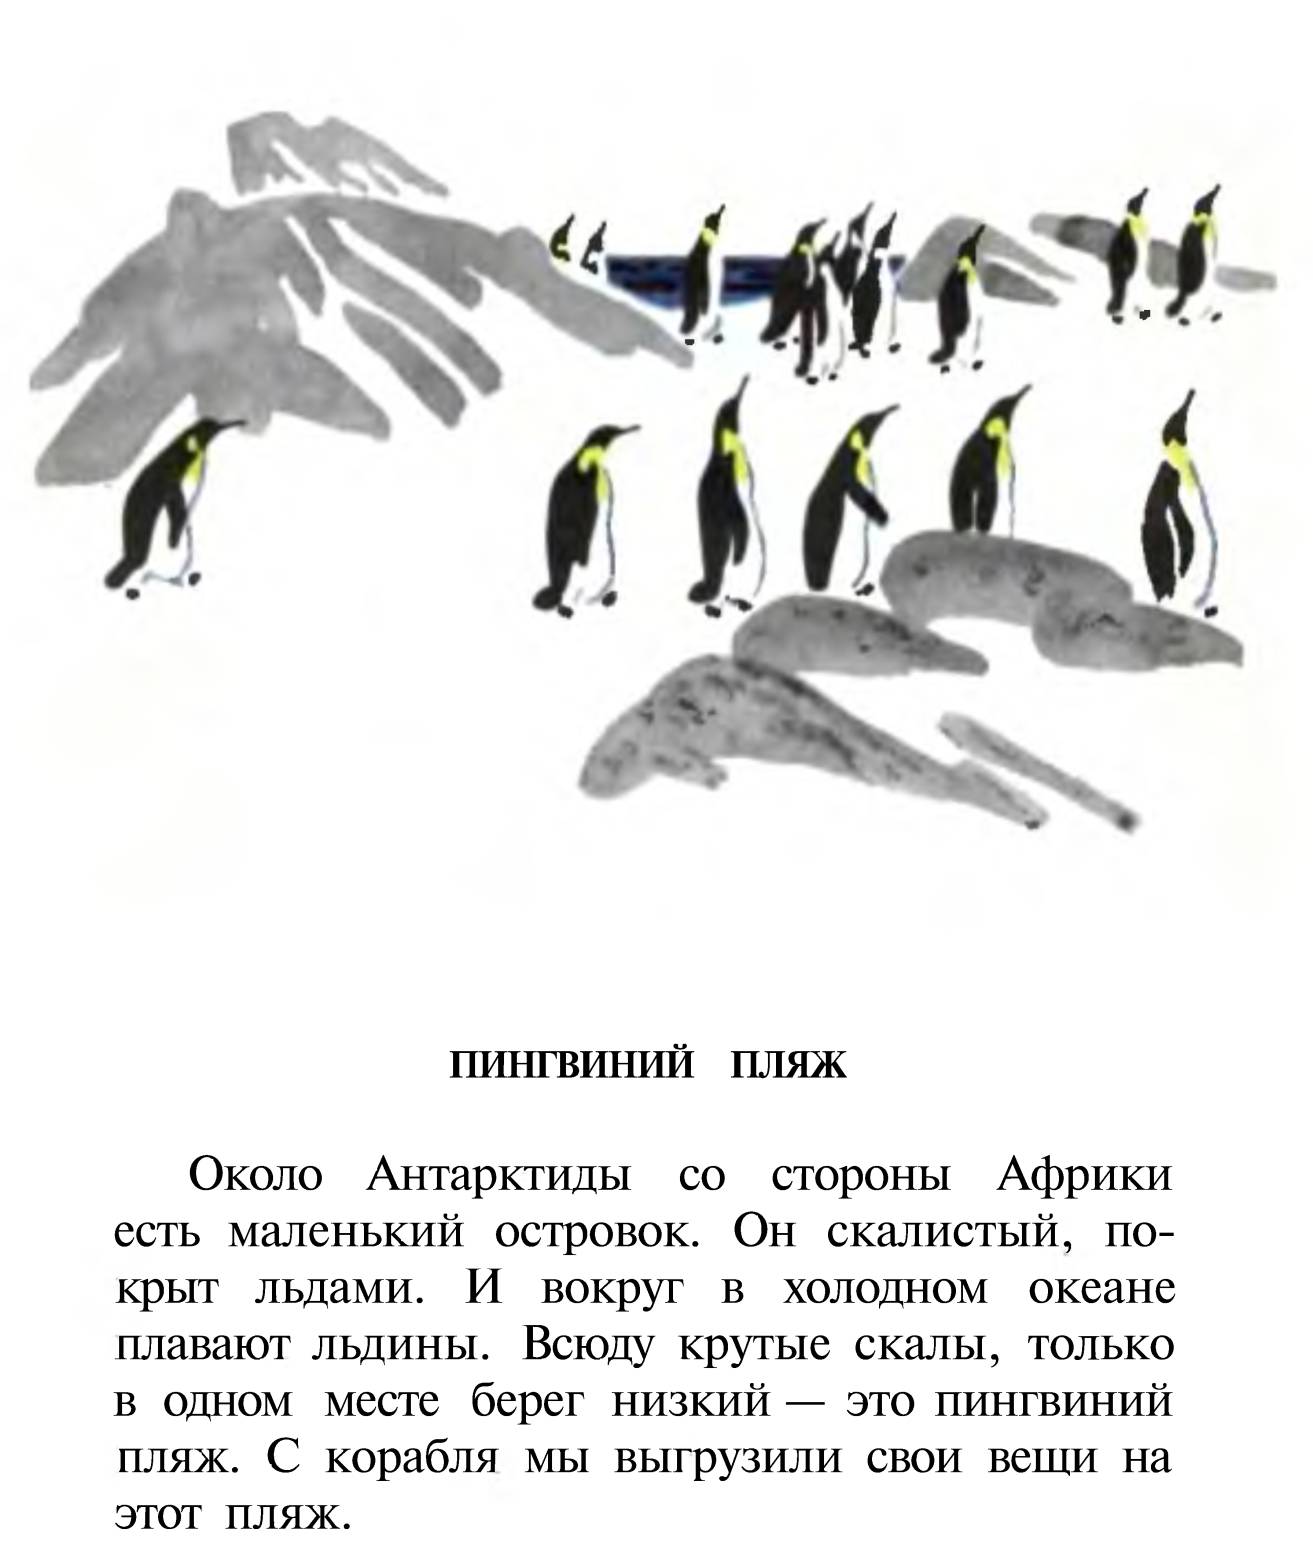 Про пингвинов рассказ читать. Рассказ про пингвинов Снегирев. Г Снегирева про пингвинов рассказ. Чтение рассказа Снегирева Пингвиний пляж.